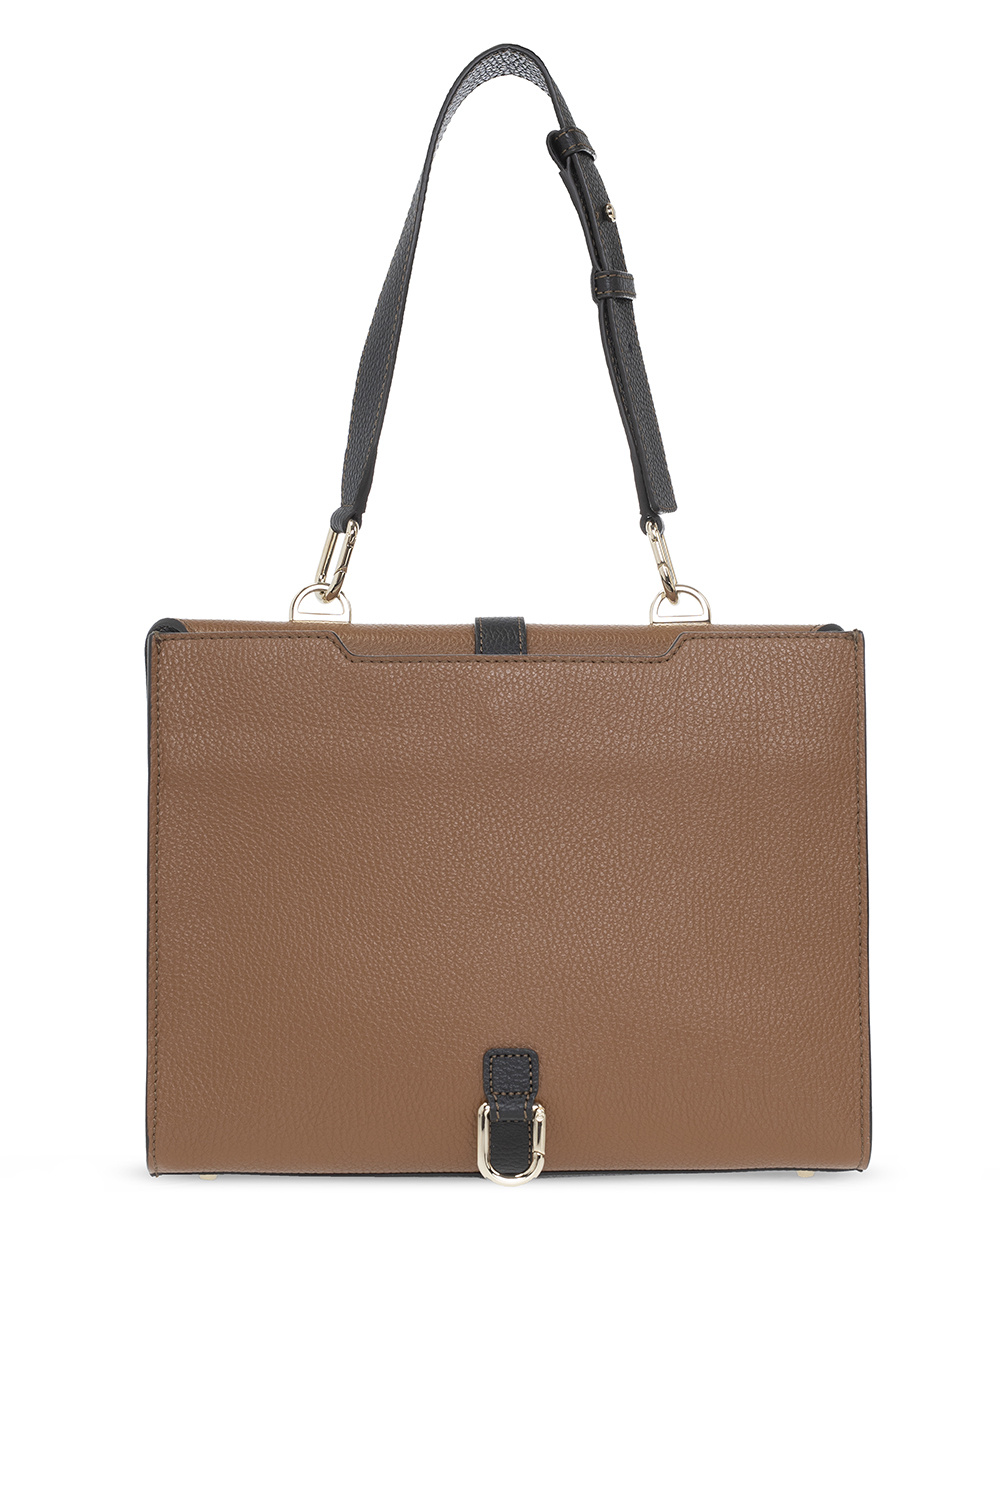 Furla ‘Narciso Small’ shoulder bag